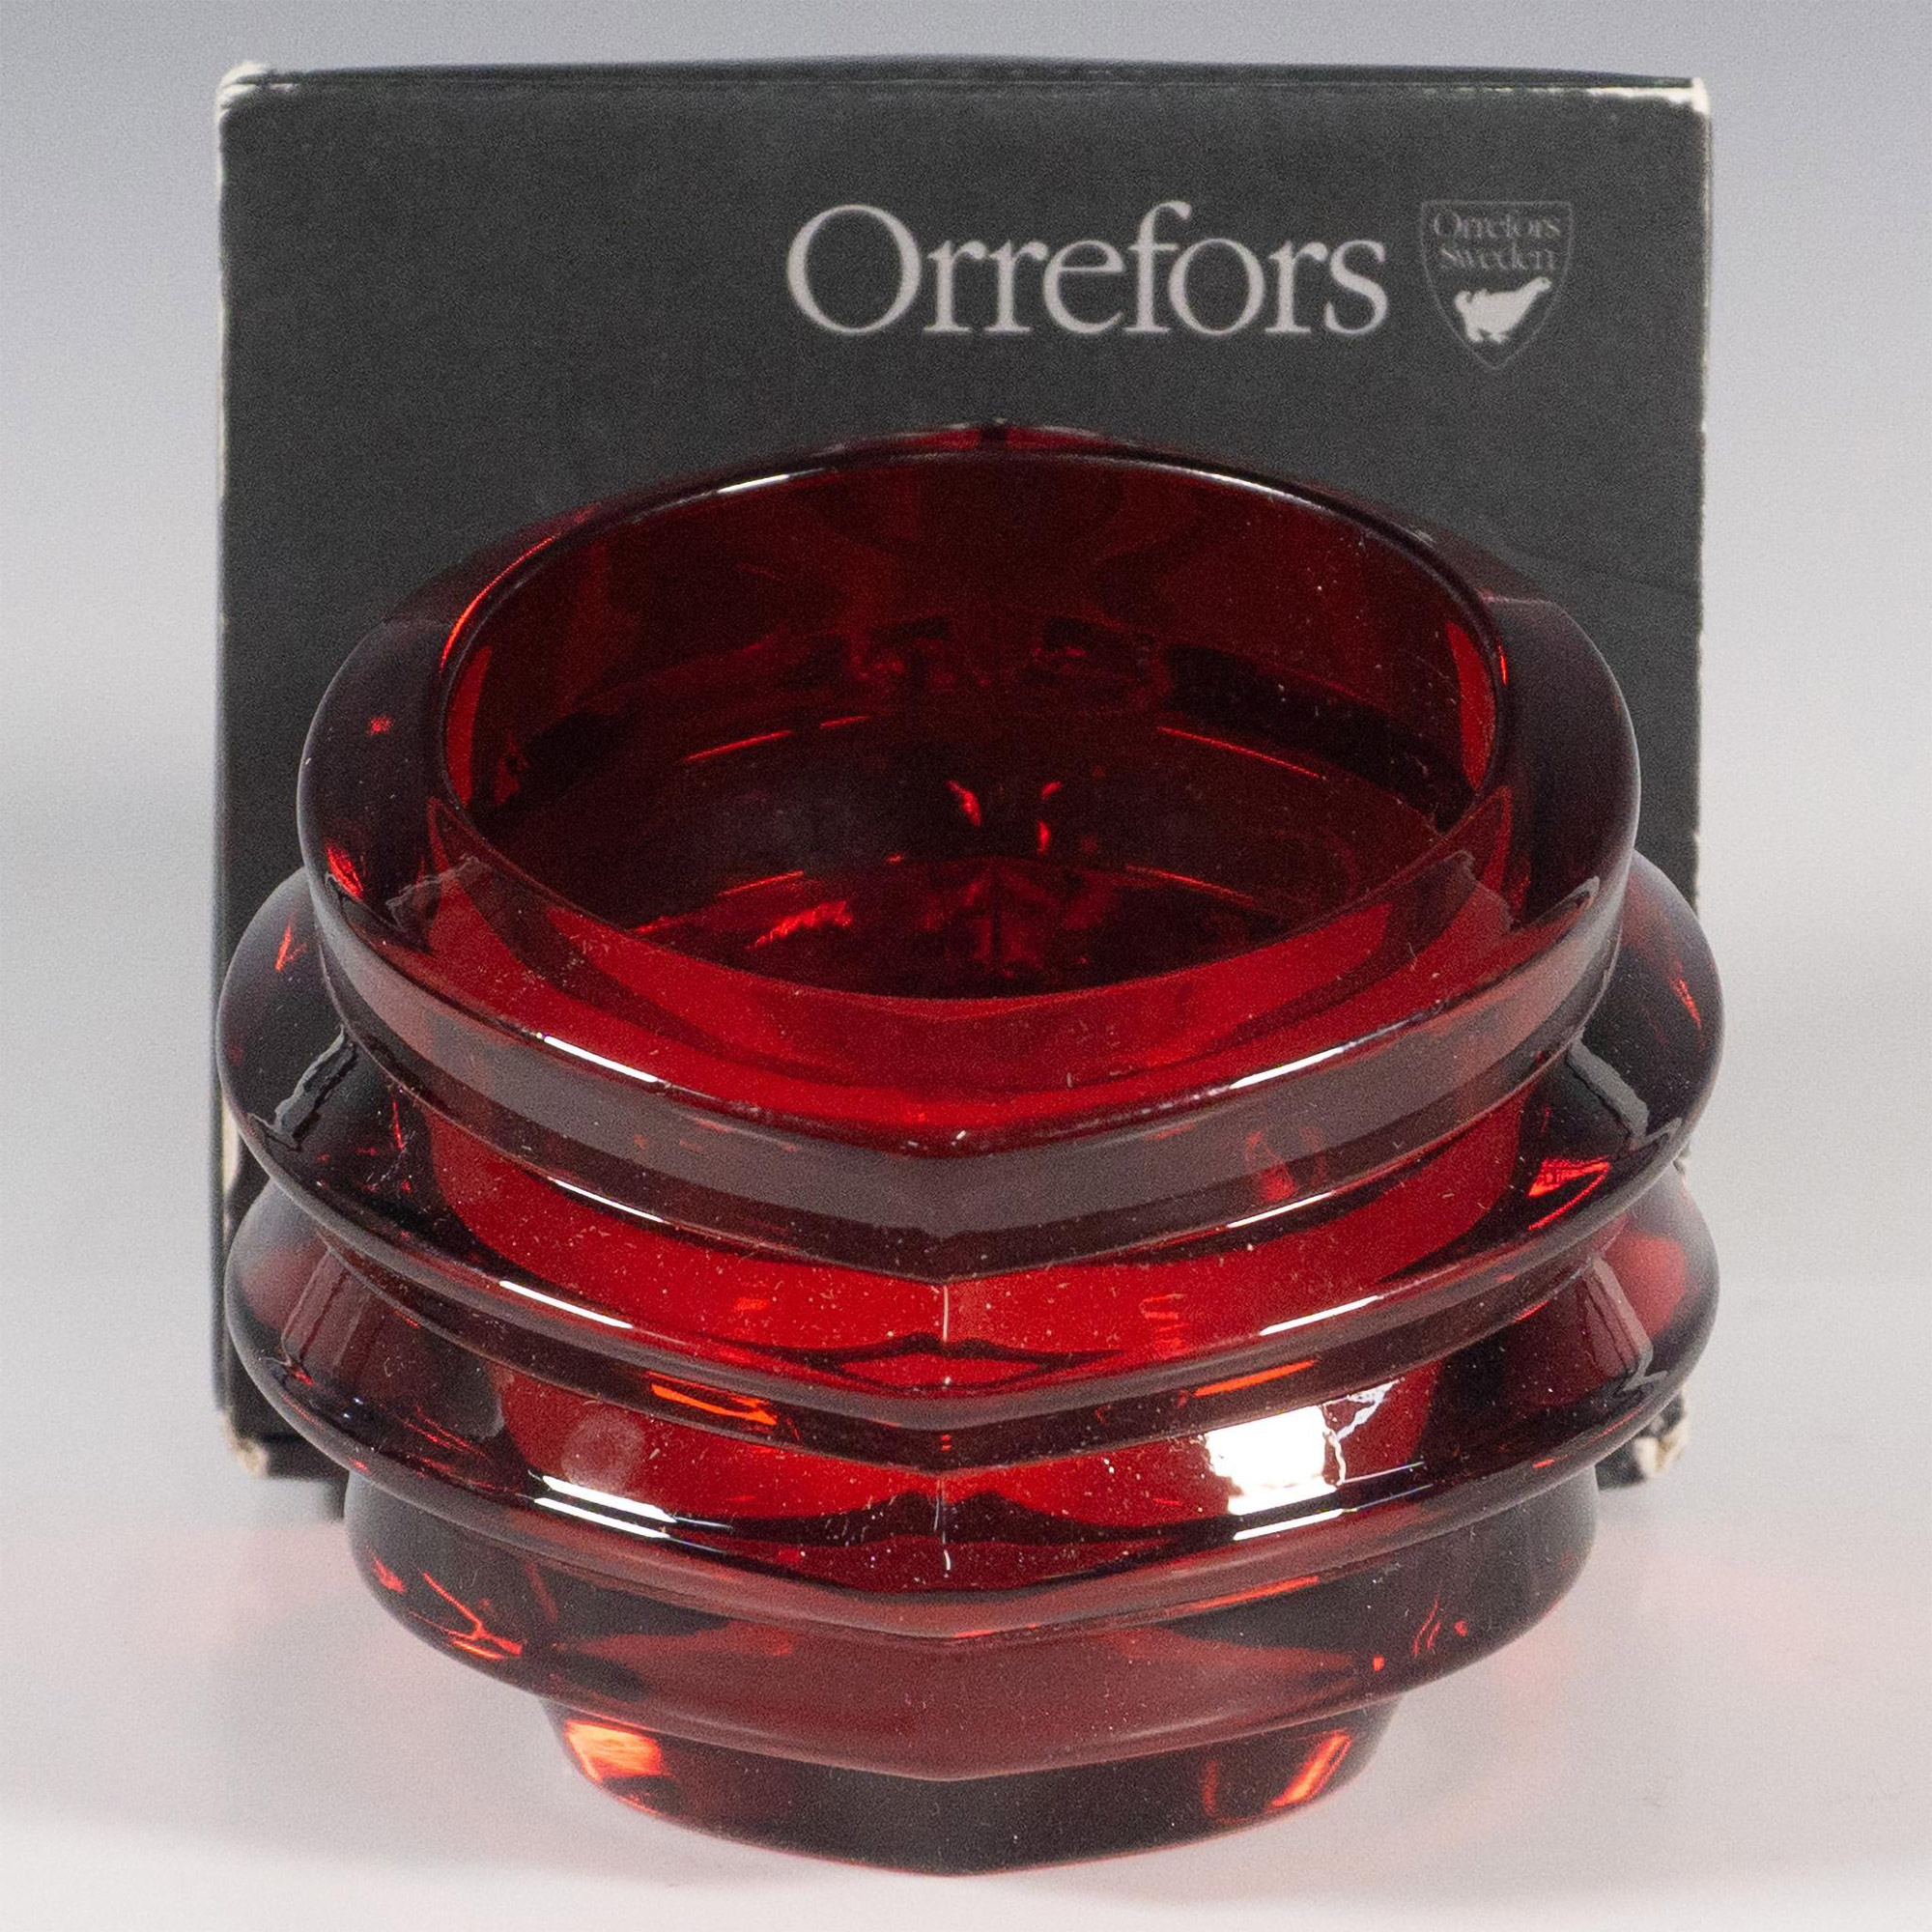 Orrefors Crystal Candle Holder, Eko Red Votive - Image 2 of 3